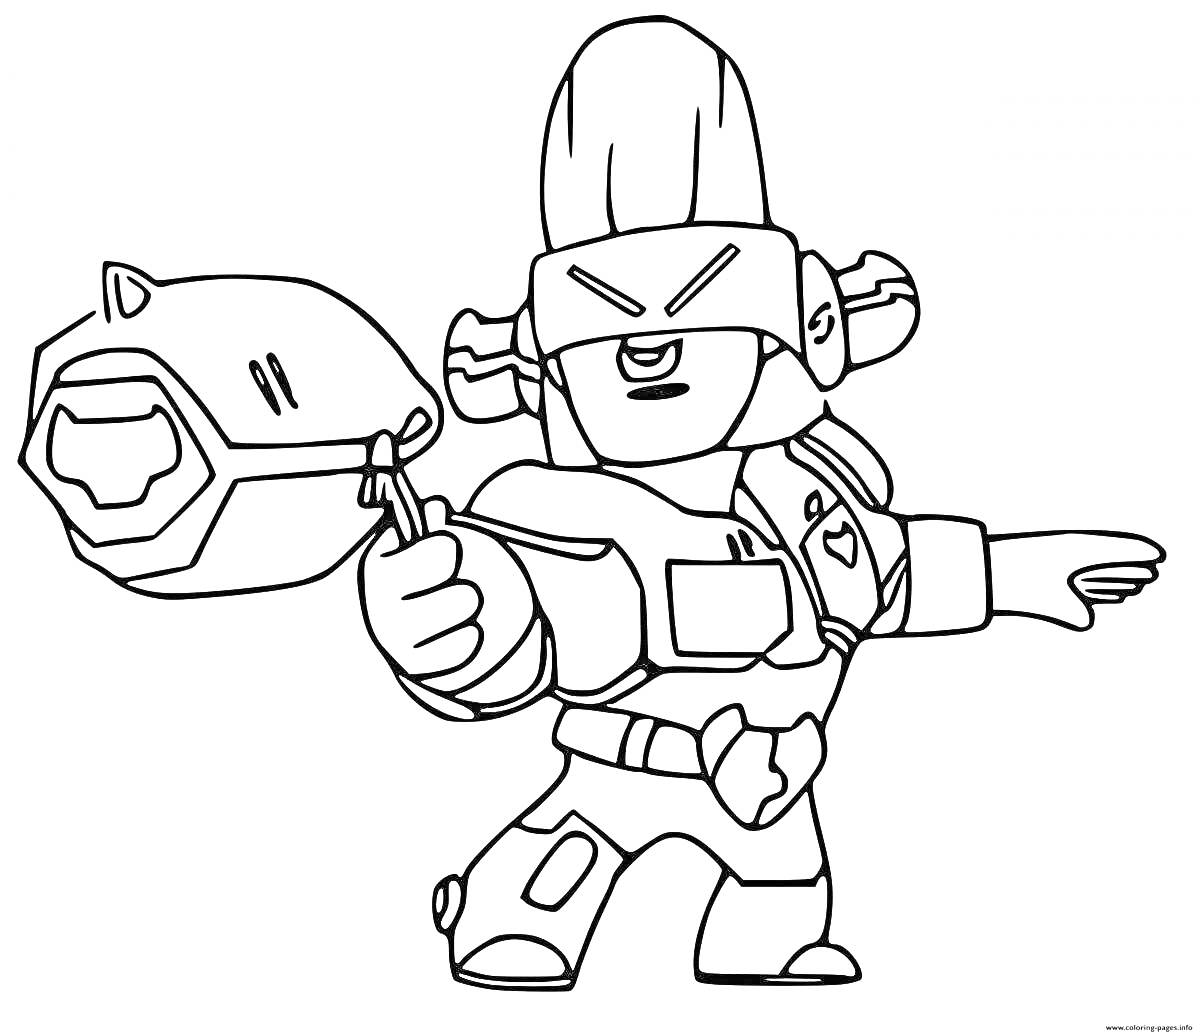 Раскраска Персонаж игры Brawl Stars в шлеме с оружием в виде космического пистолета